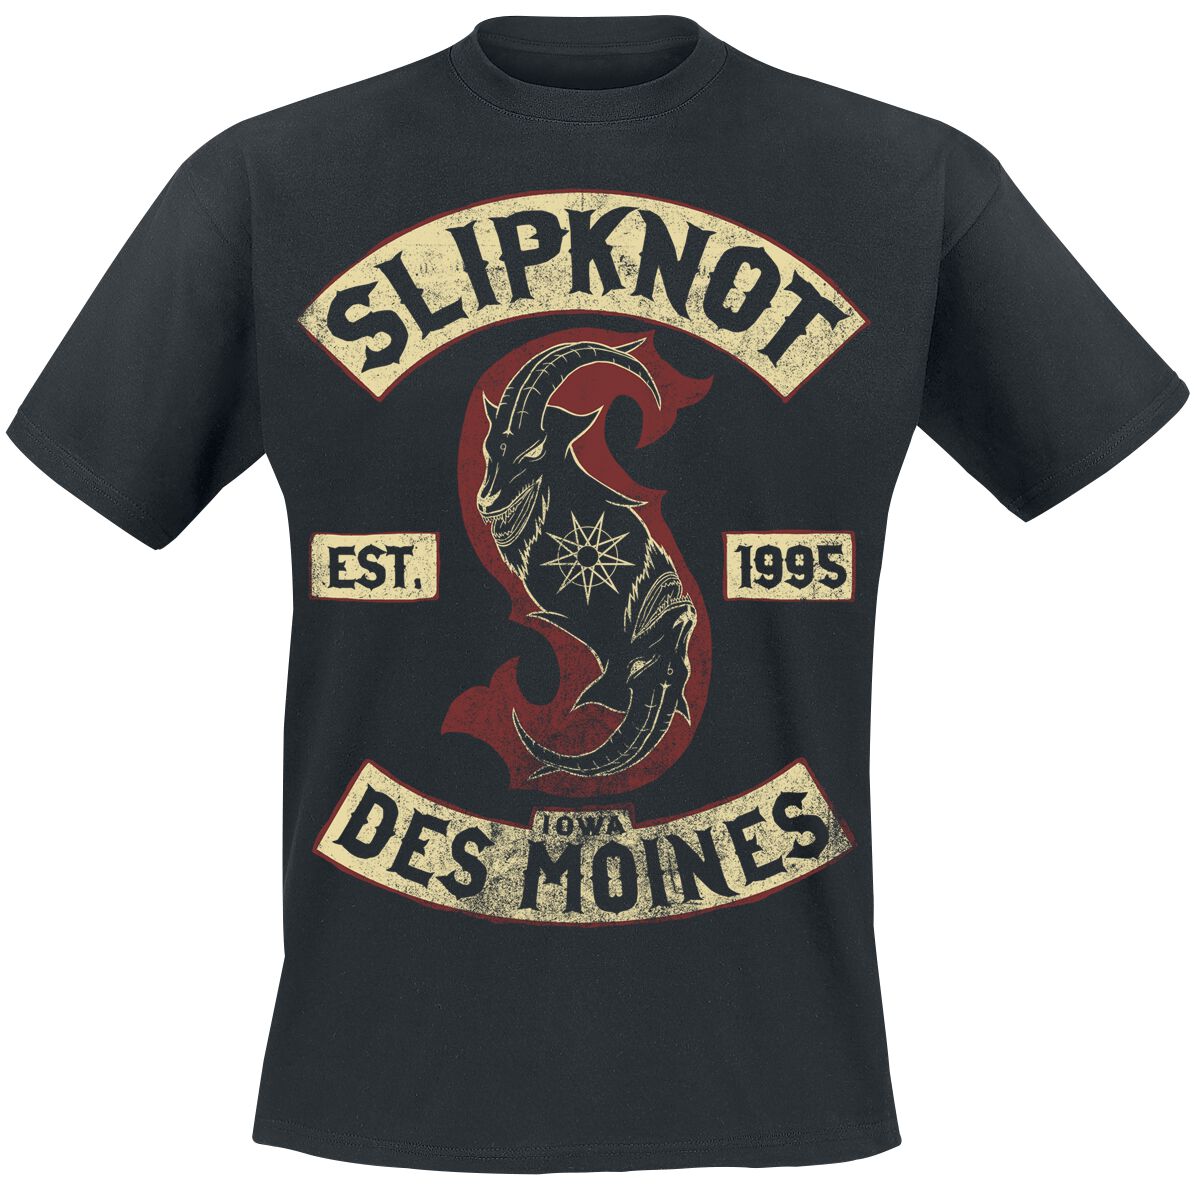 Slipknot T-Shirt - Iowa Des Moines - S bis 3XL - für Männer - Größe L - schwarz  - Lizenziertes Merchandise!